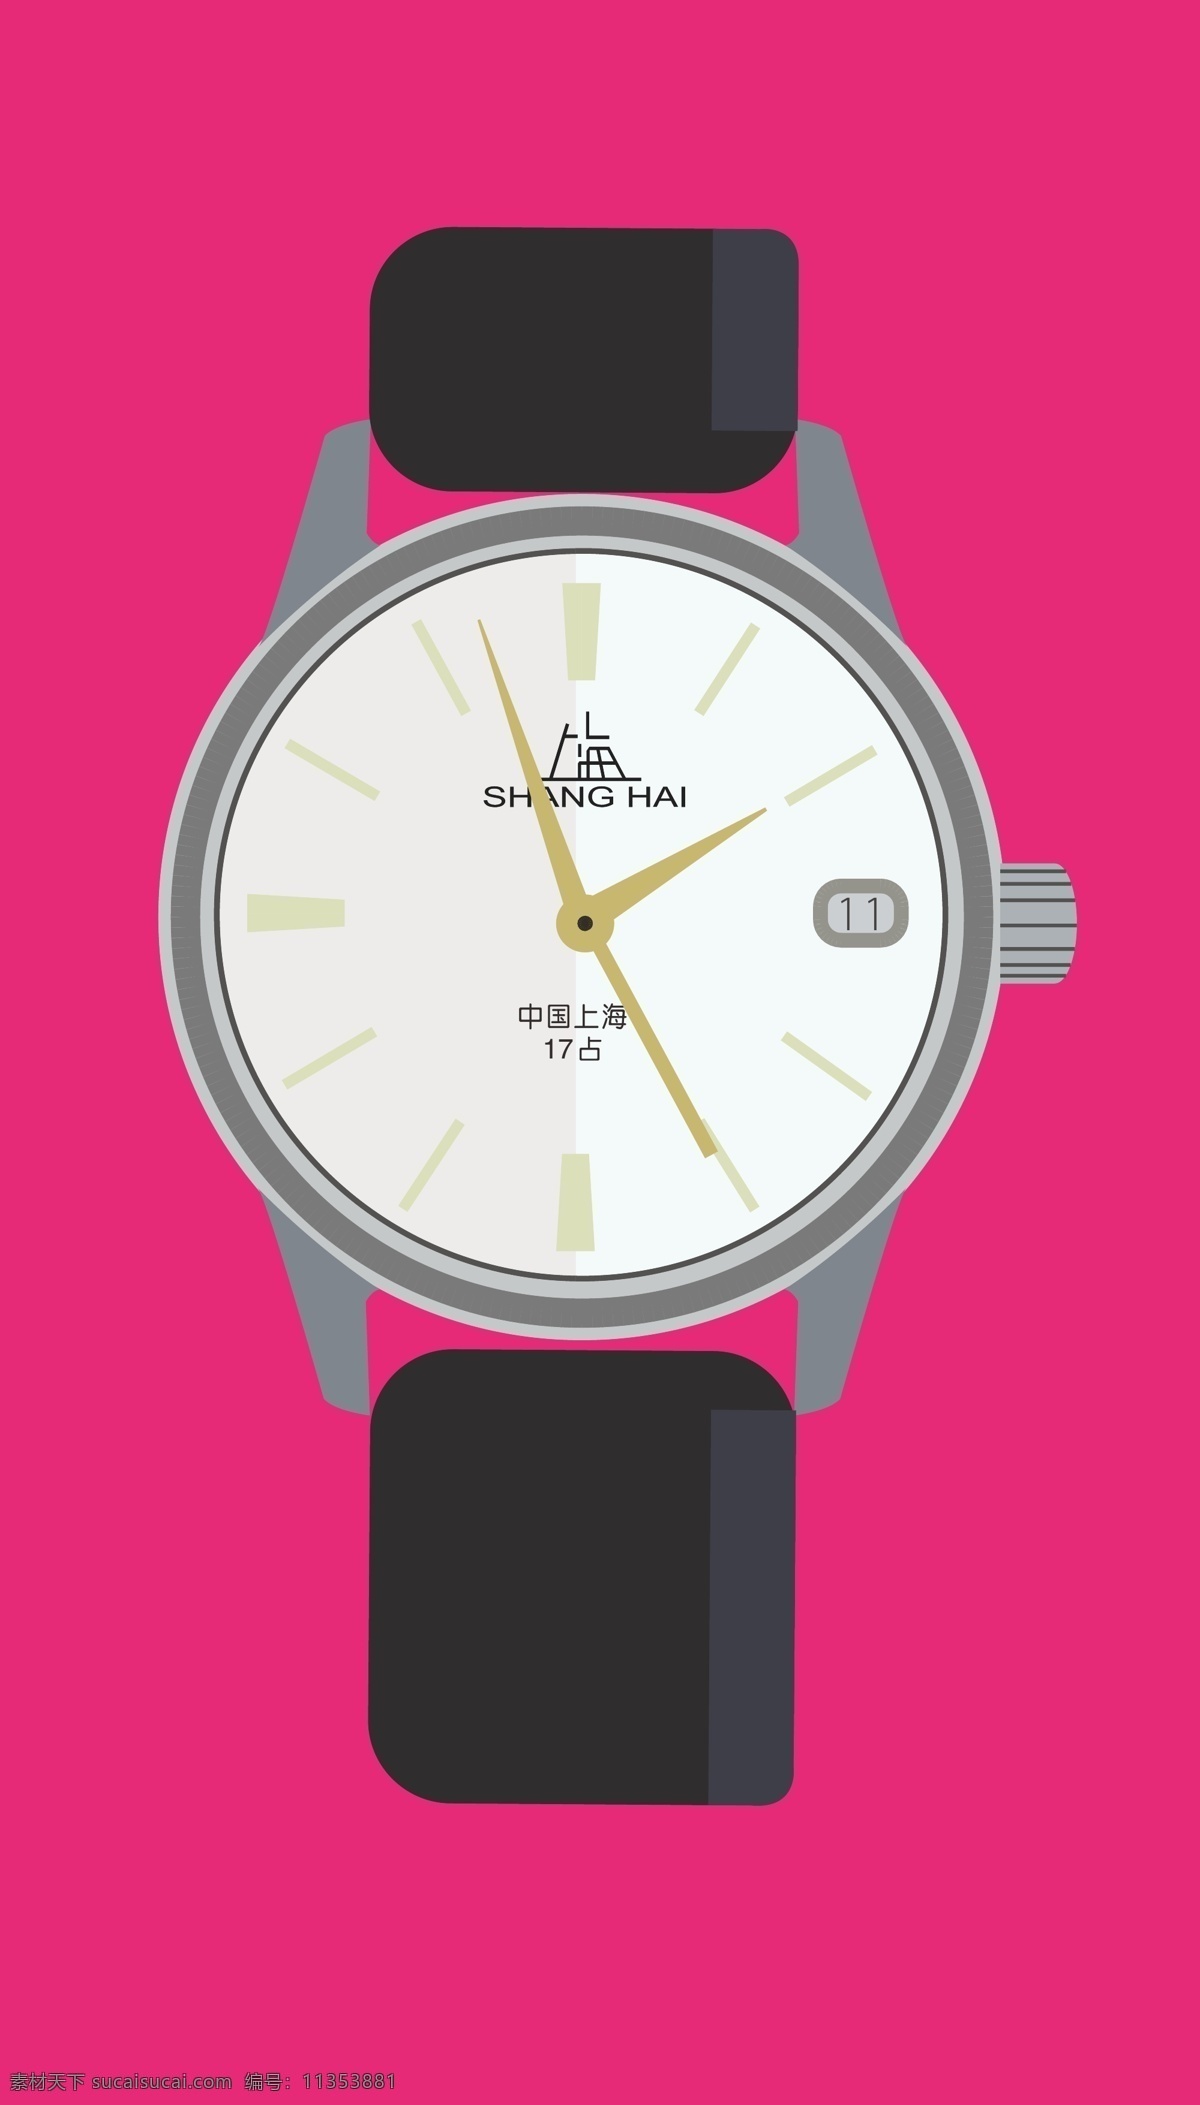 上海牌手表 手表 上海牌 老式 矢量 黑色 诺贝文事素材 动漫动画 风景漫画